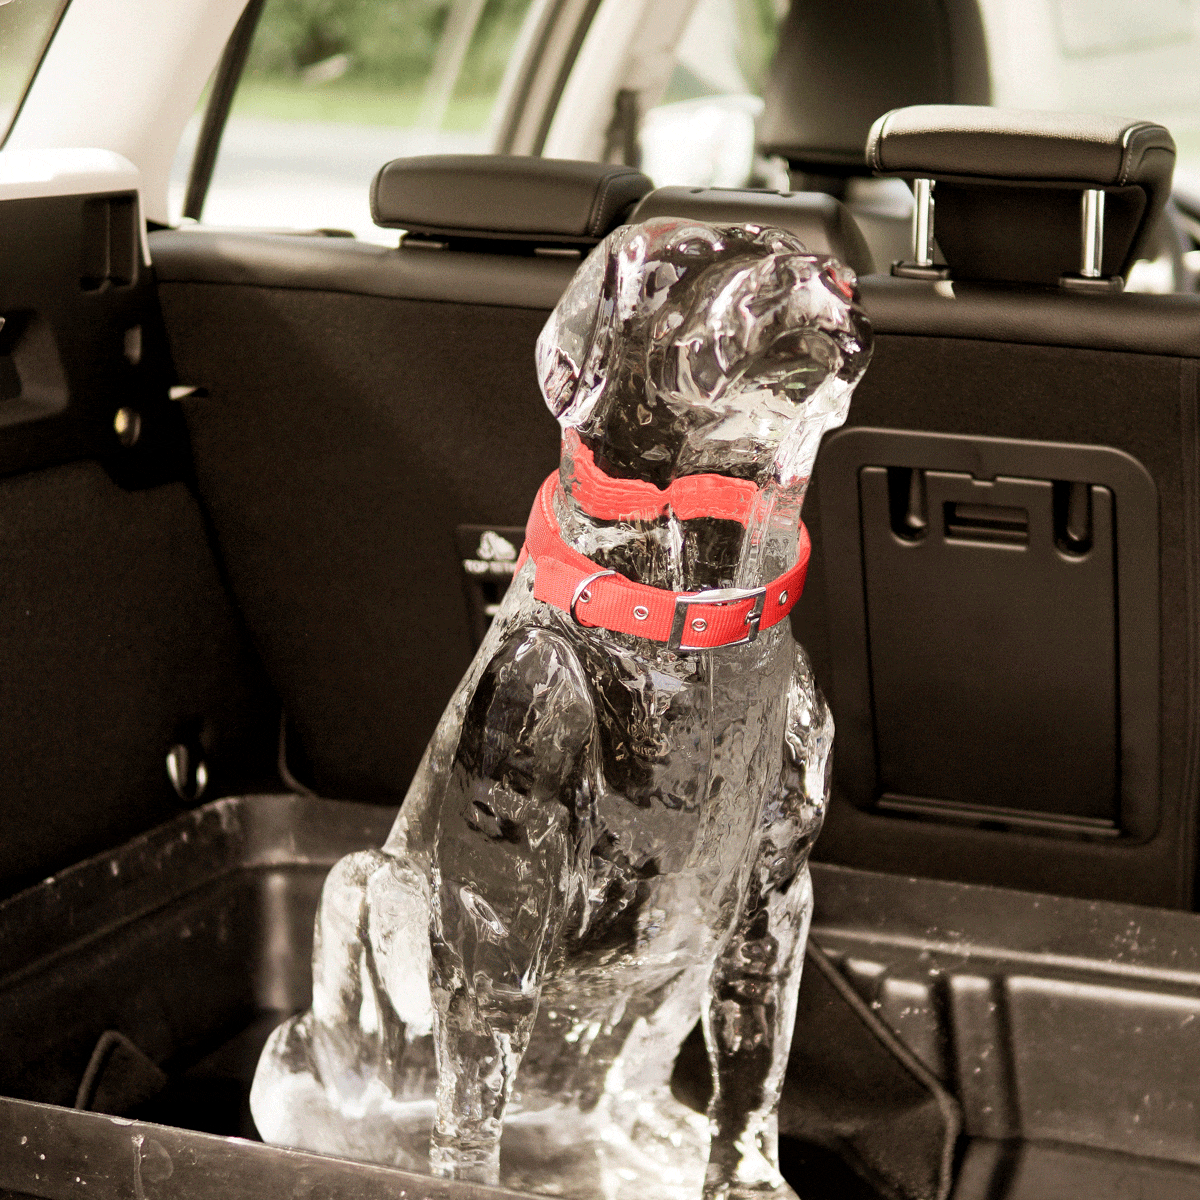 2019 FORD ICE DOG Ford : Πως μερικά λεπτά στο αυτοκίνητο το καλοκαίρι, μπορούν να αποβούν μοιραία για παιδιά και κατοικίδια